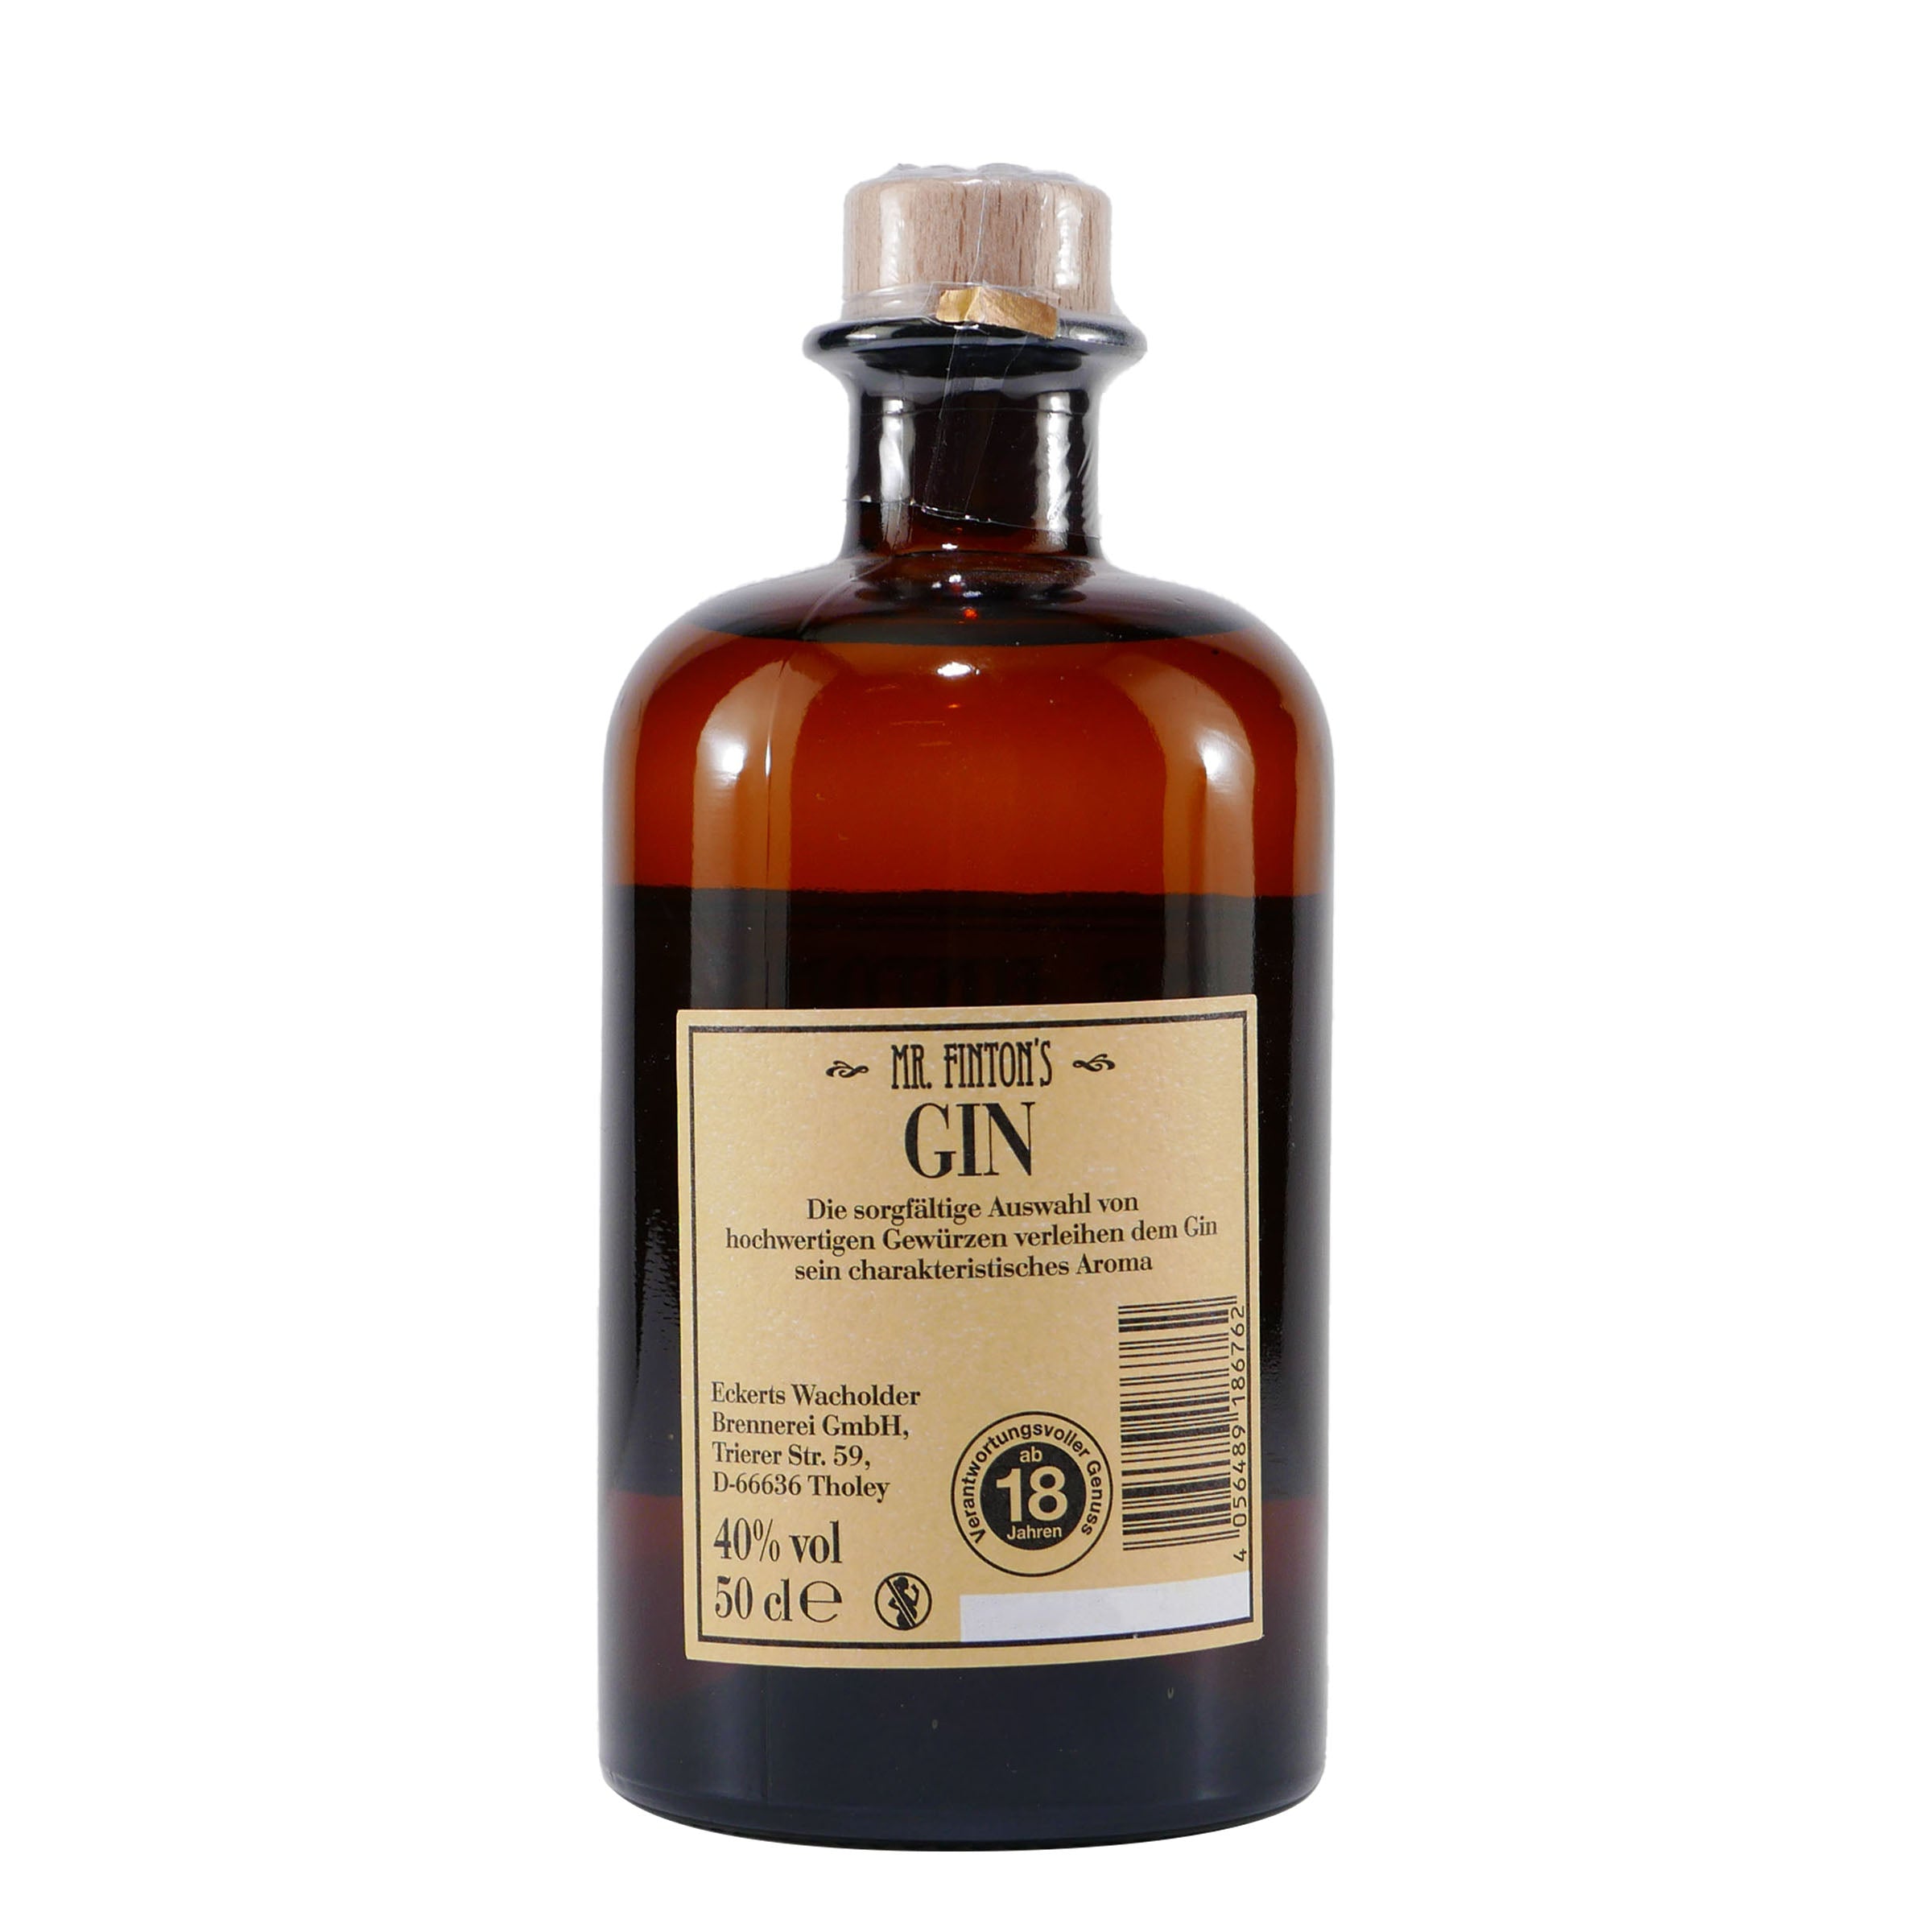 Mr. Finton's Gin - Exquisiter handgefertigter Premium-Gin